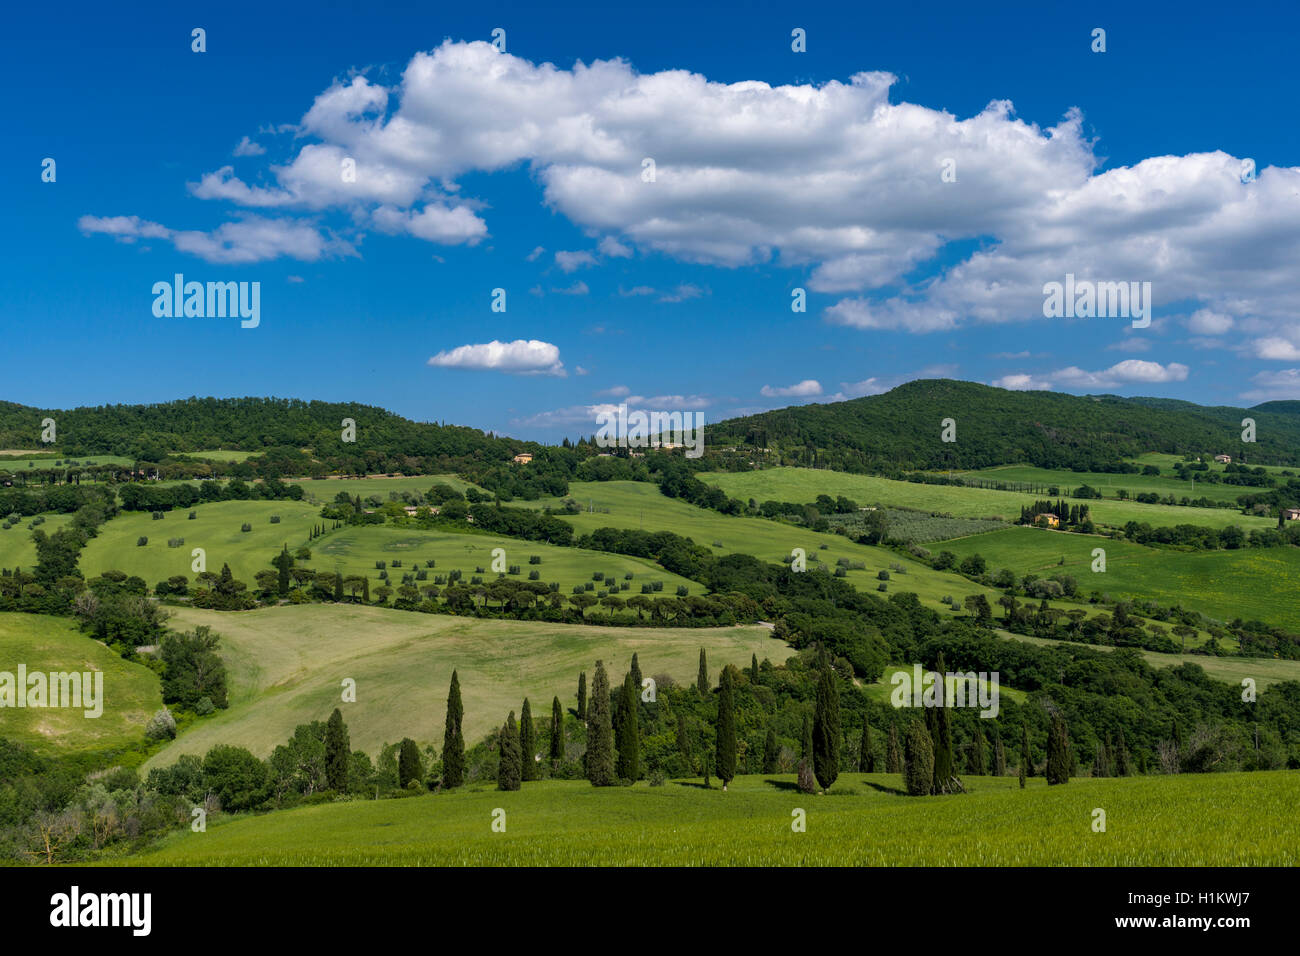 Verde típico paisaje toscano en Val d'Orcia con colinas, árboles, campos de cereal, cipreses y azul cielo nublado, La Foce, Toscana Foto de stock